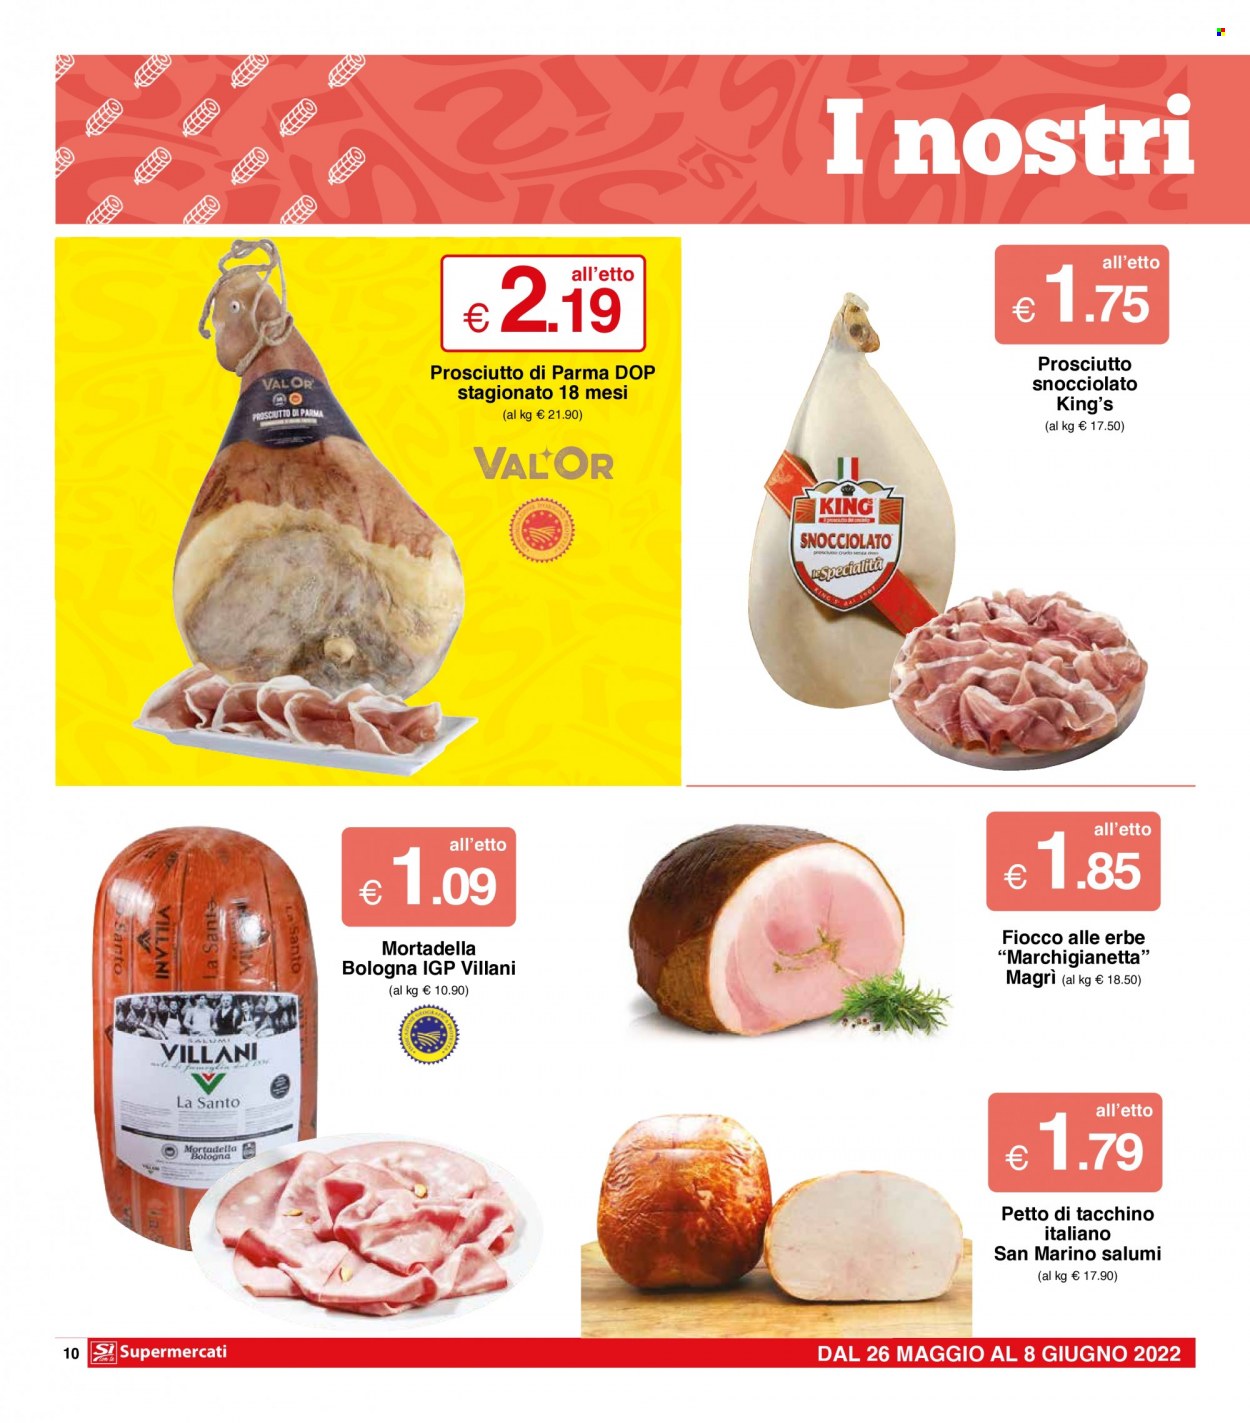 thumbnail - Volantino Si con te Supermercati - 26/5/2022 - 8/6/2022 - Prodotti in offerta - petto di tacchino, prosciutto, Prosciutto di Parma, mortadella. Pagina 10.